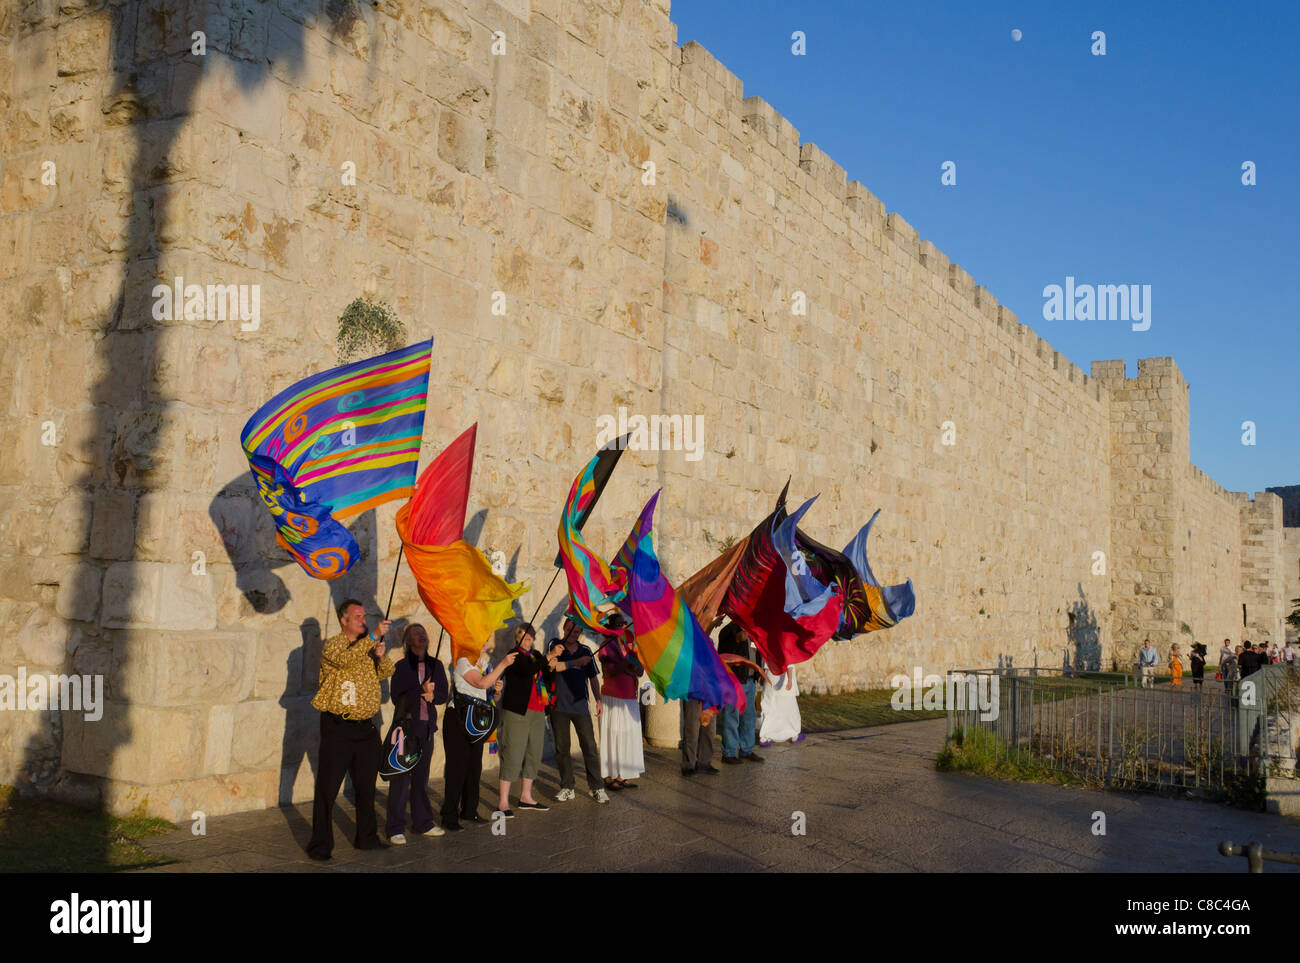 La Marche des pèlerins américains avec drapeaux colorés le long des murs de la ville. Jérusalem Vieille Ville. Israël Banque D'Images